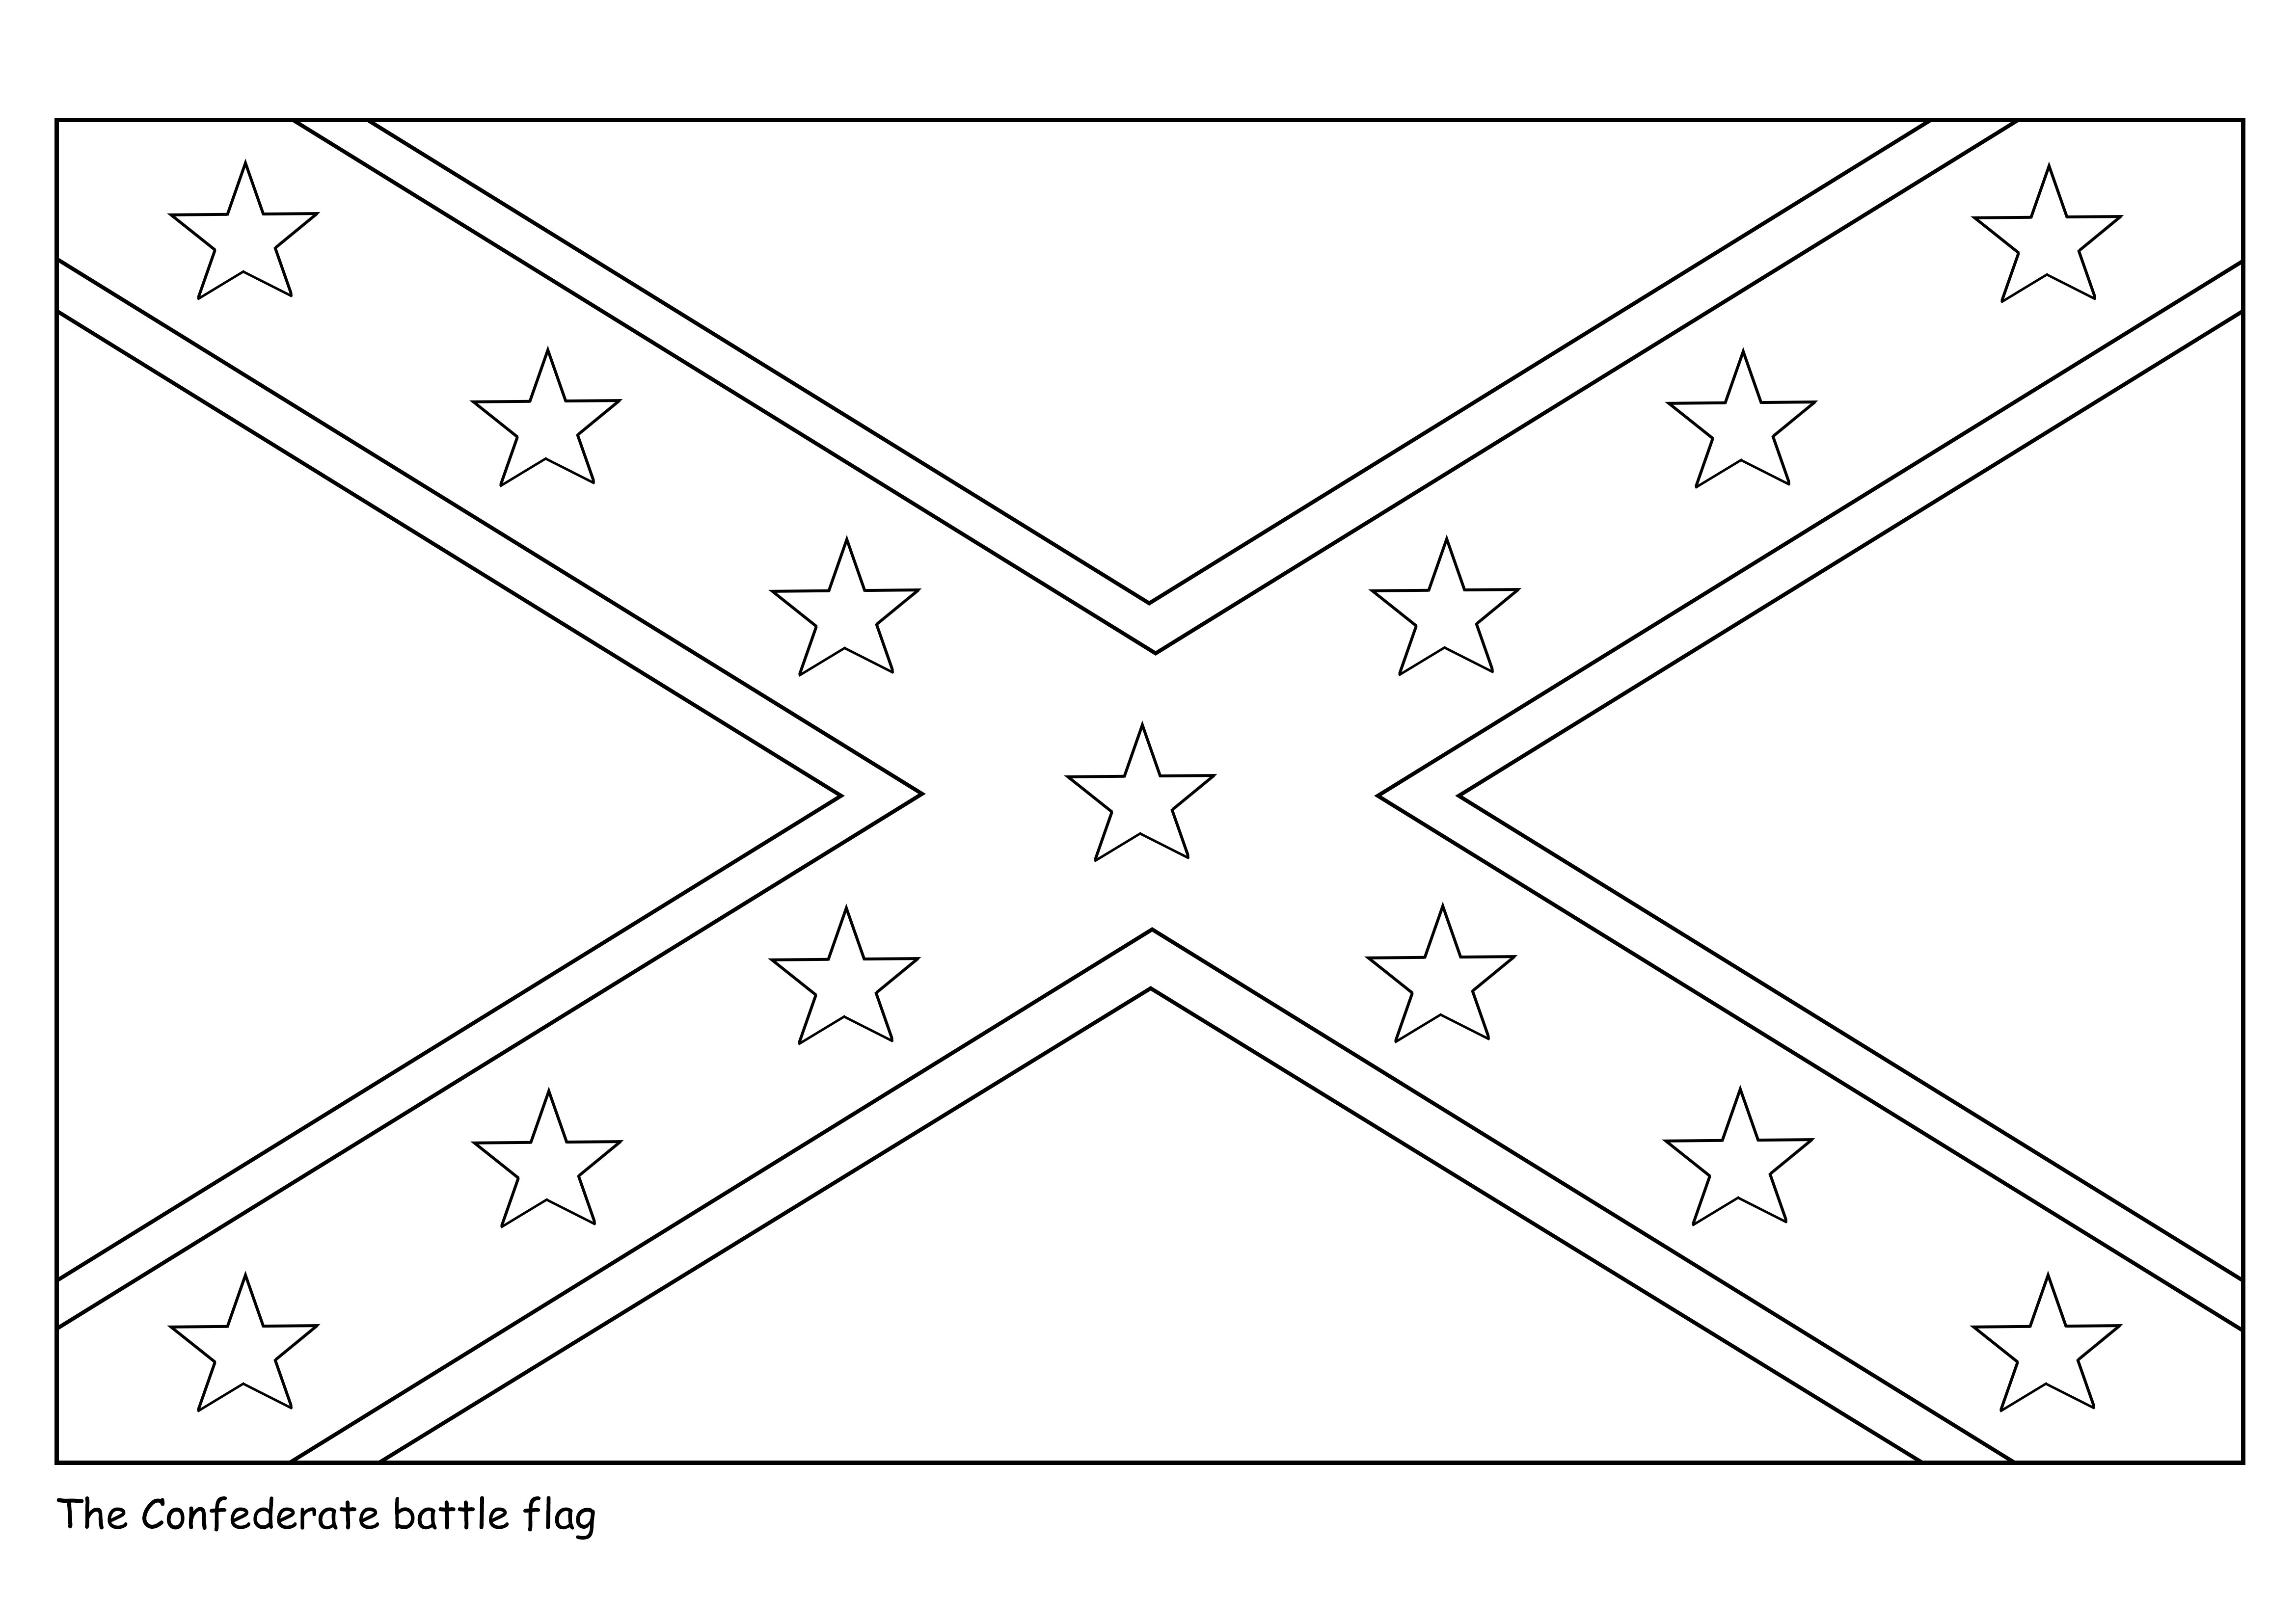 Konfederasyon Bayrağı çocuklar için ücretsiz ve yazdırması kolay boyama sayfası